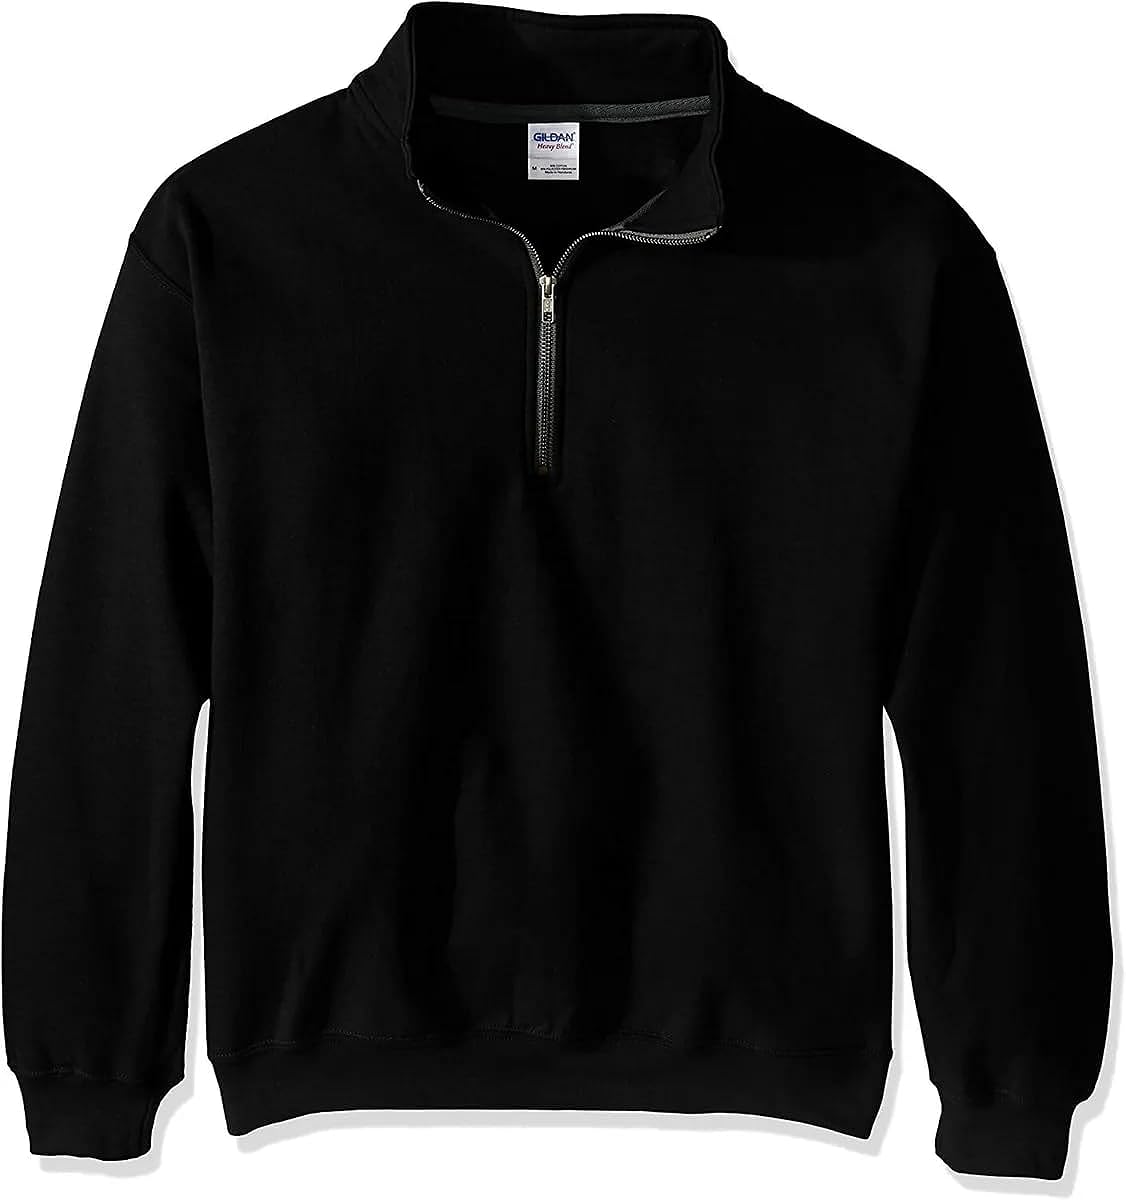 Gildan Adult Fleece Quarter-Zip Cadet Collar Sweatshirt, Style G18800